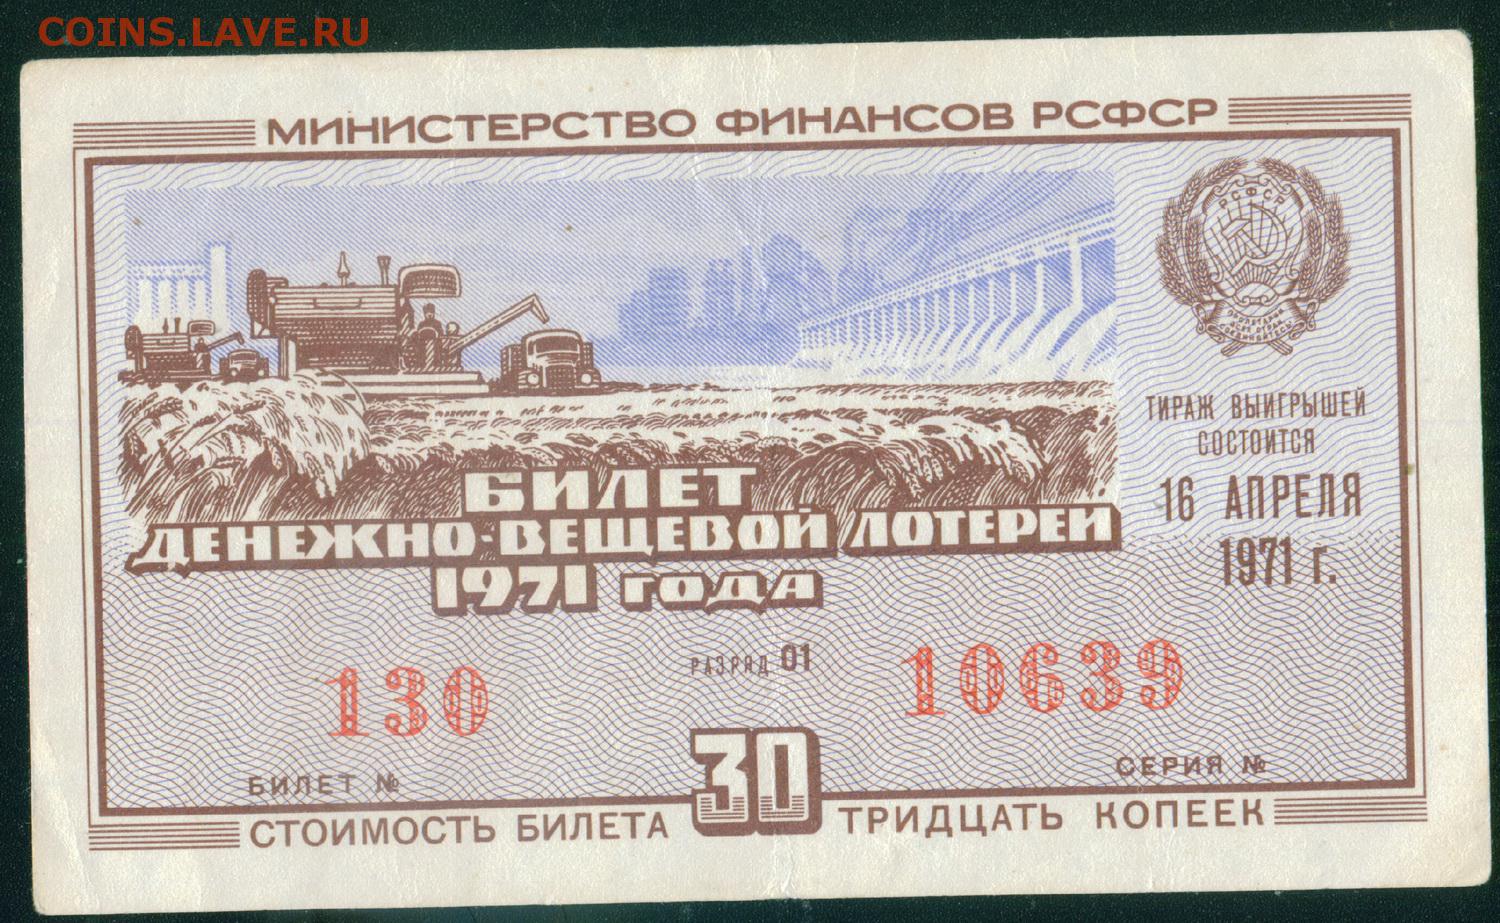 Организатор лотереи напечатал всего 10000 билетов. Денежно-вещевая лотерея СССР. Лотерейный билет СССР. Советские лотерейные билеты. Билеты денежно-вещевой лотереи.